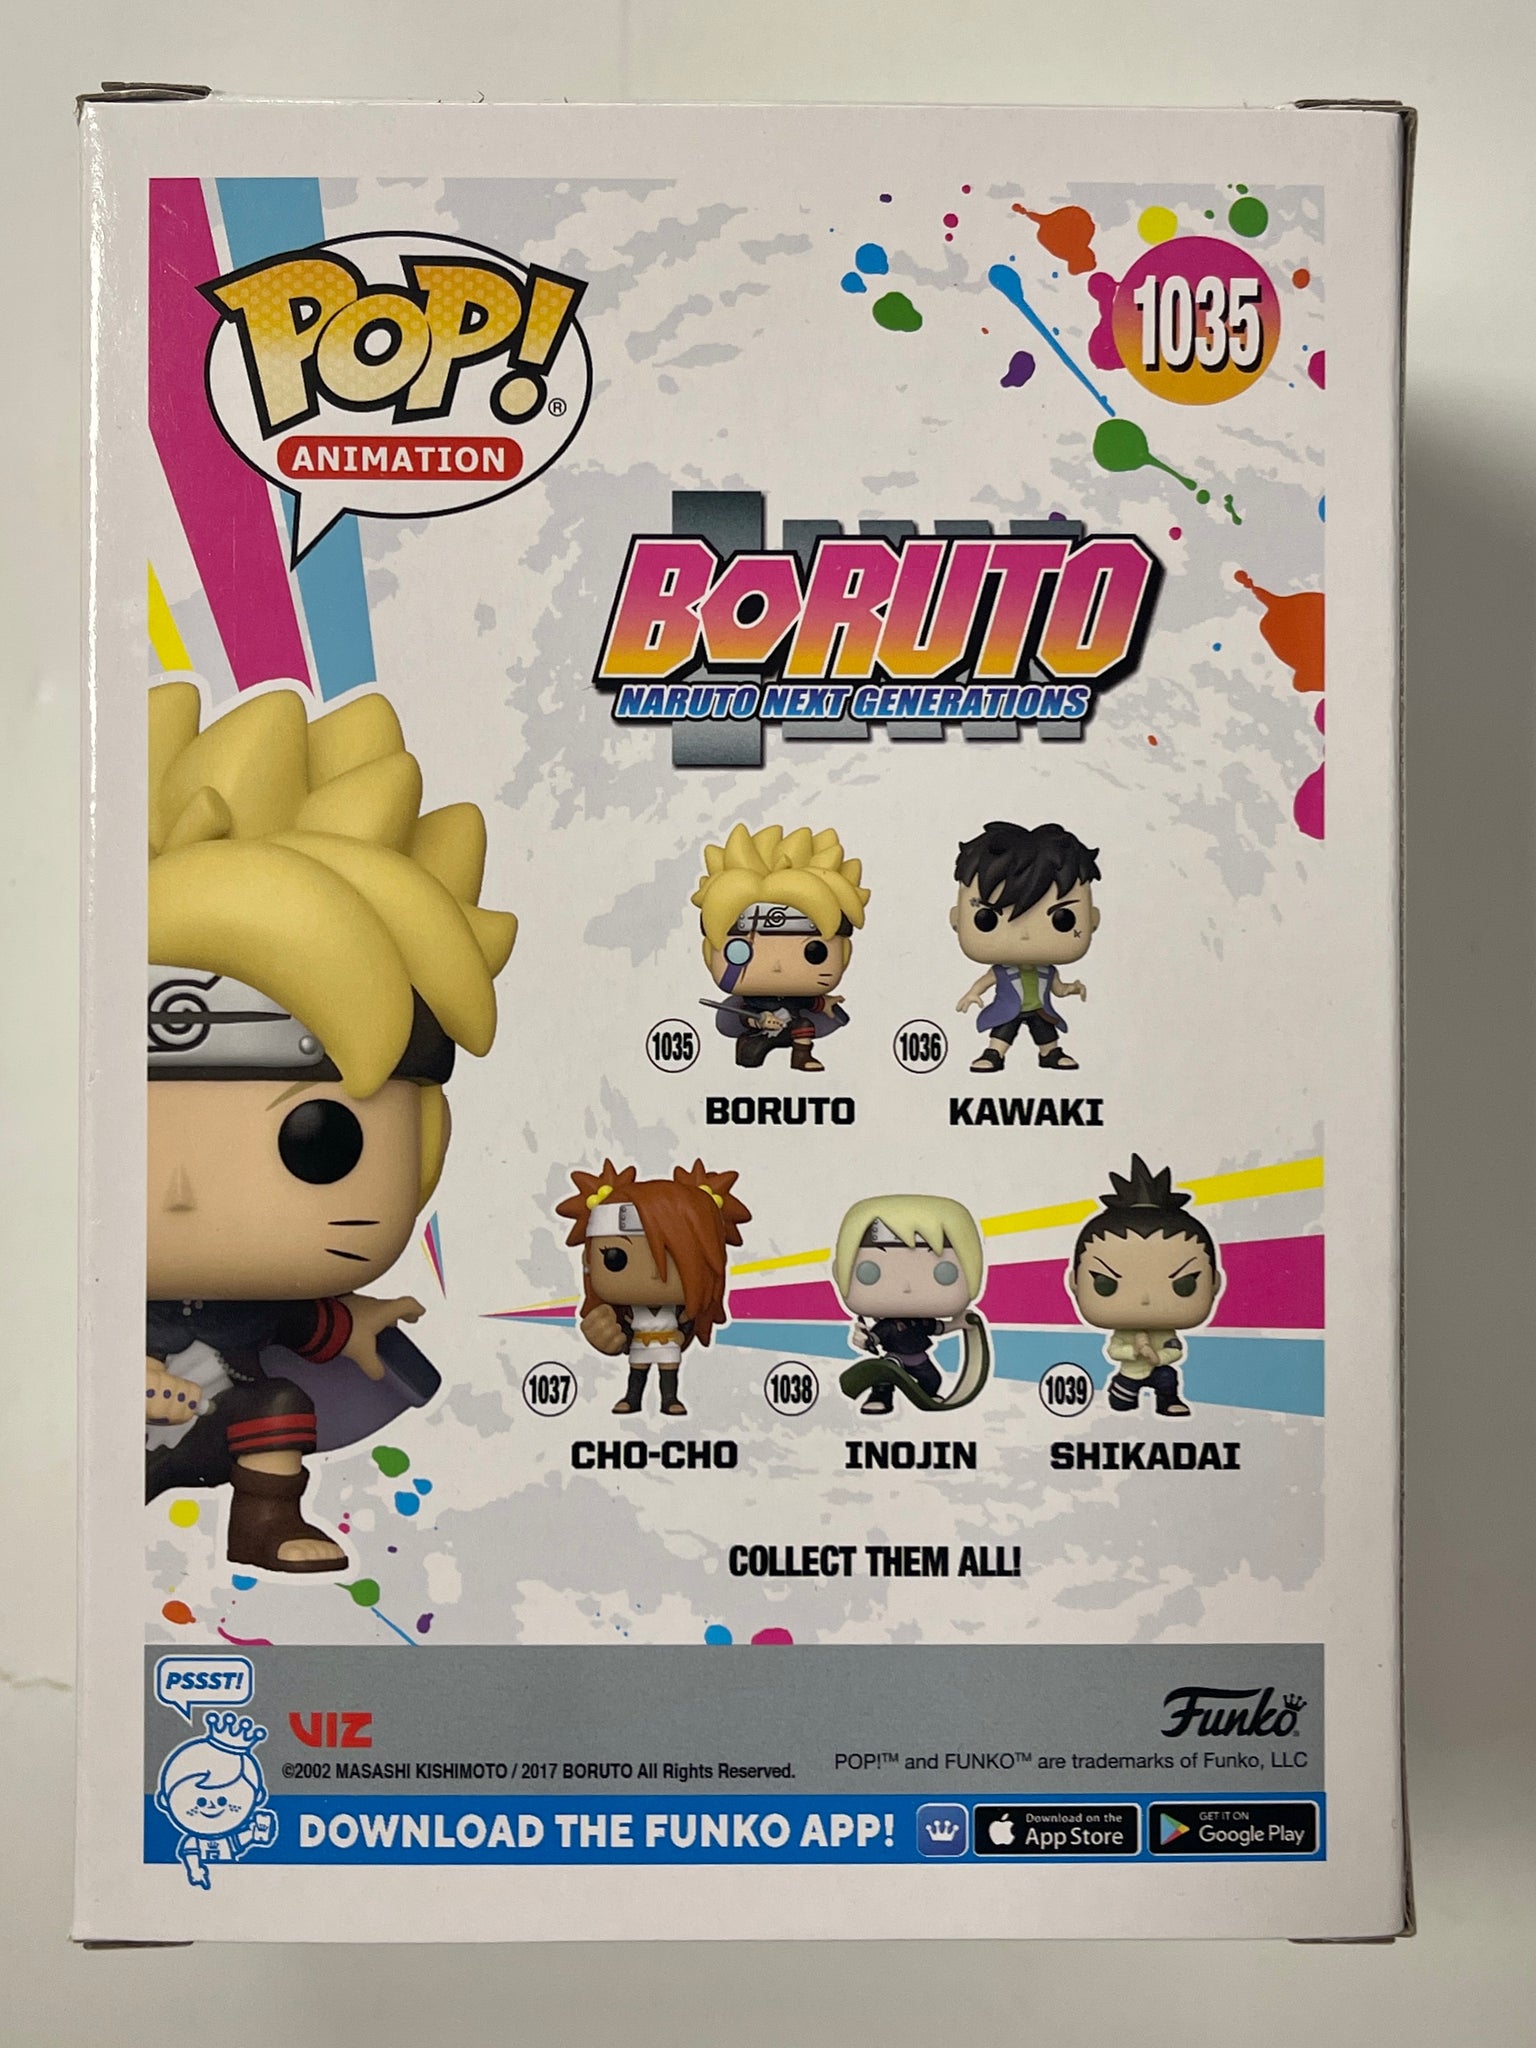 Funko Pop Boruto: Naruto Next Generations - Boruto 1035